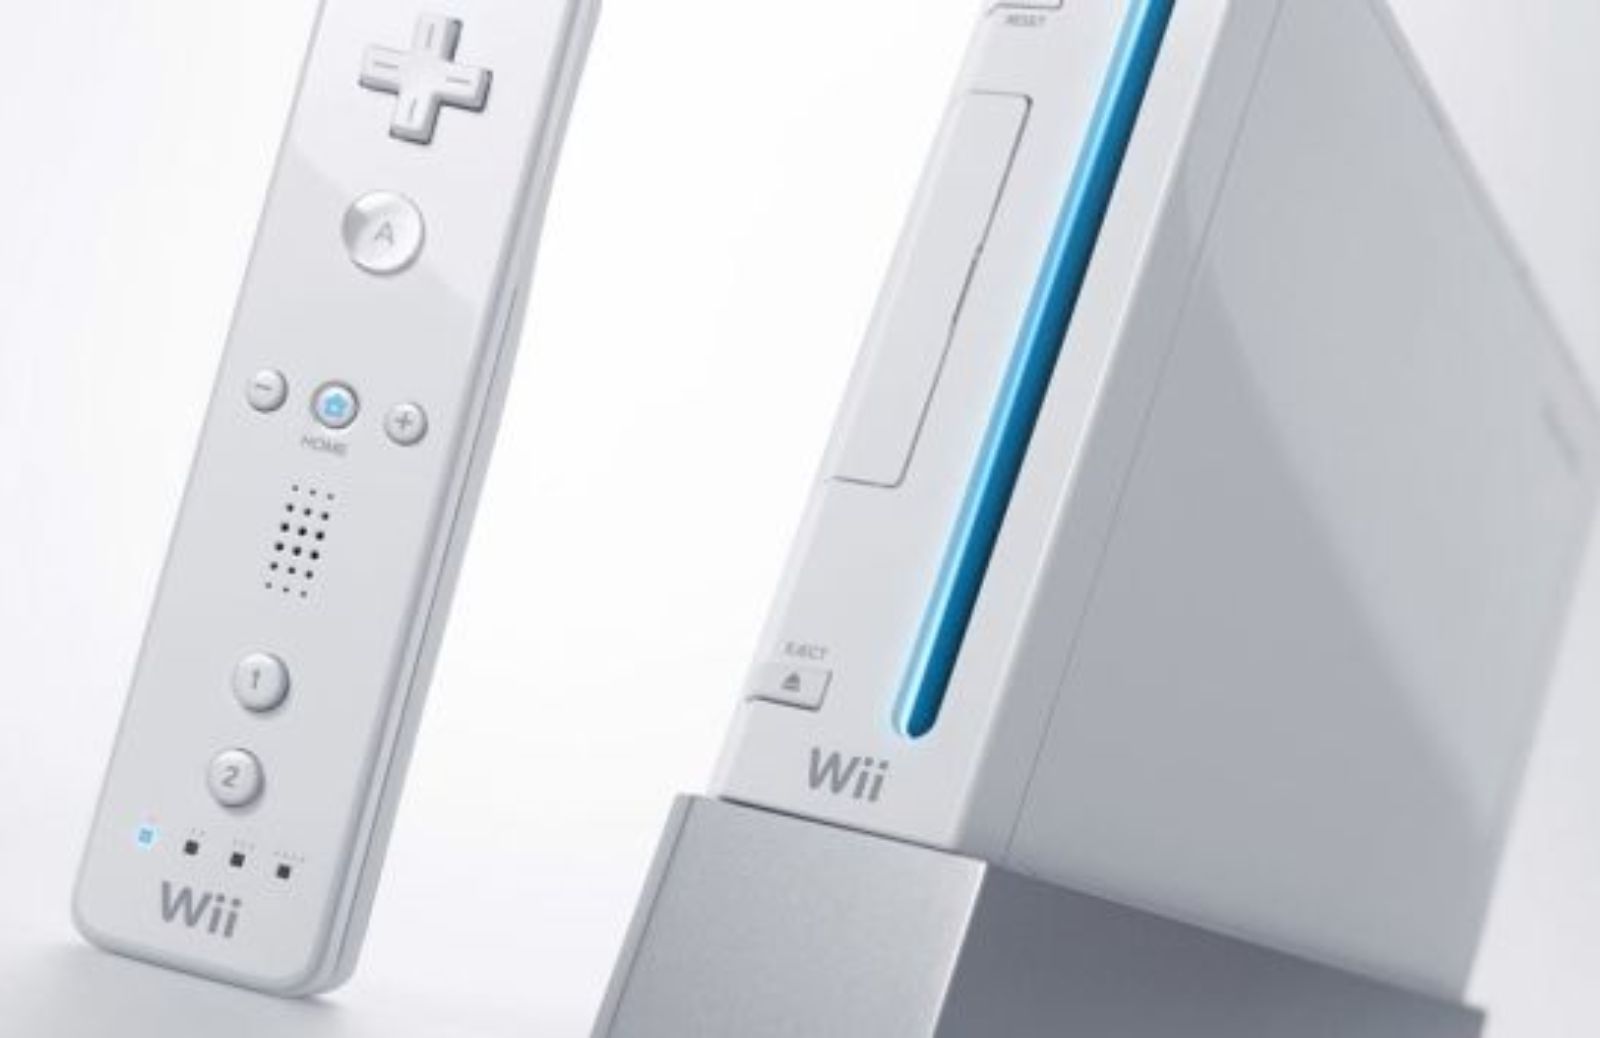 Come giocare con la tua Wii tramite wi-fi